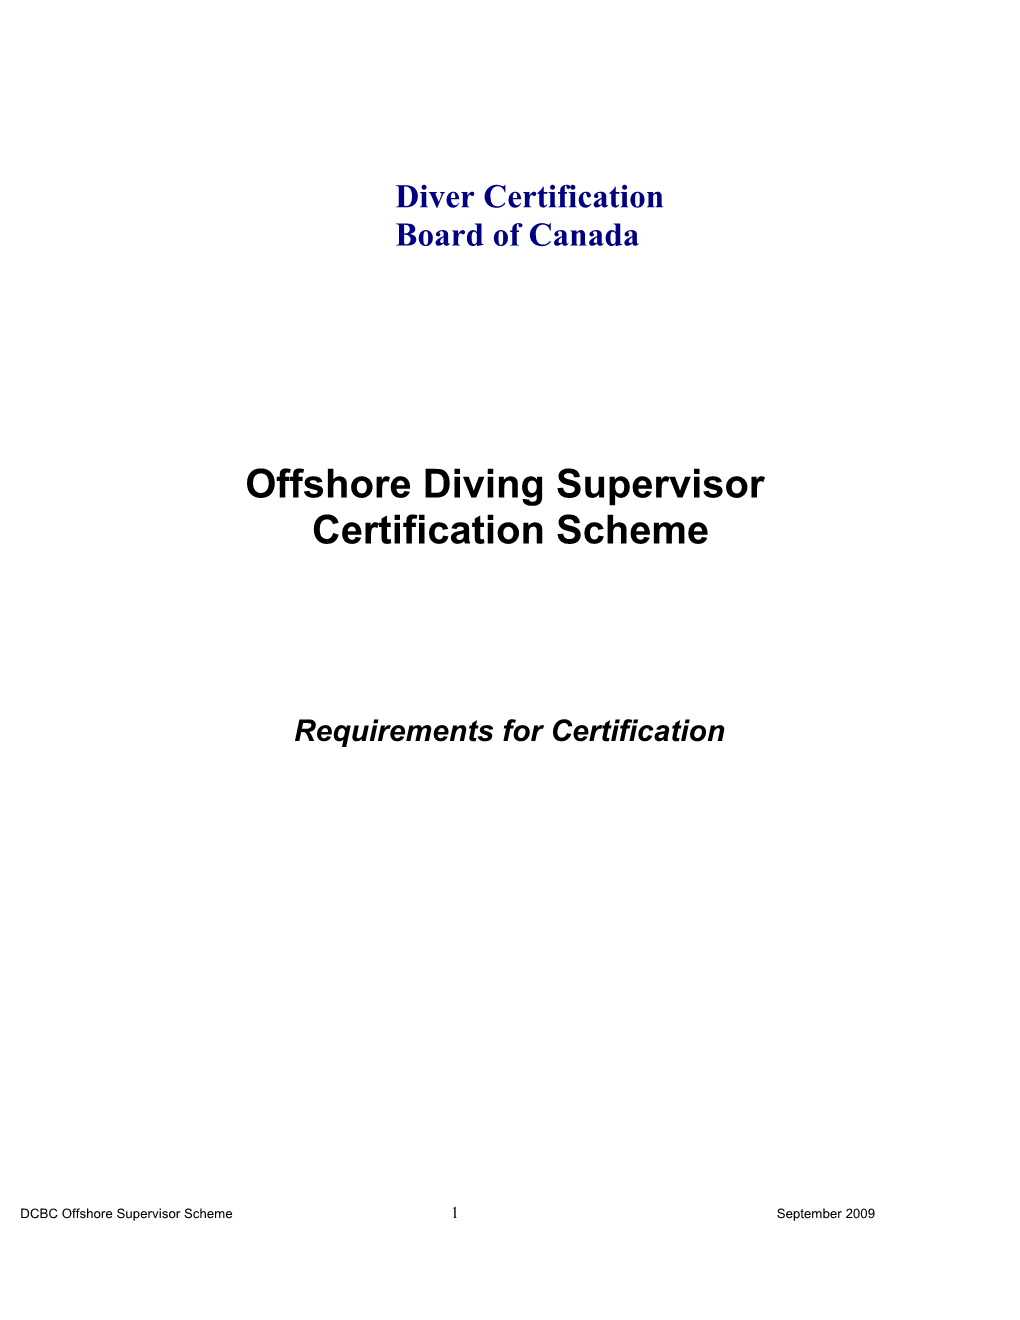 Offshore Diving Supervisor